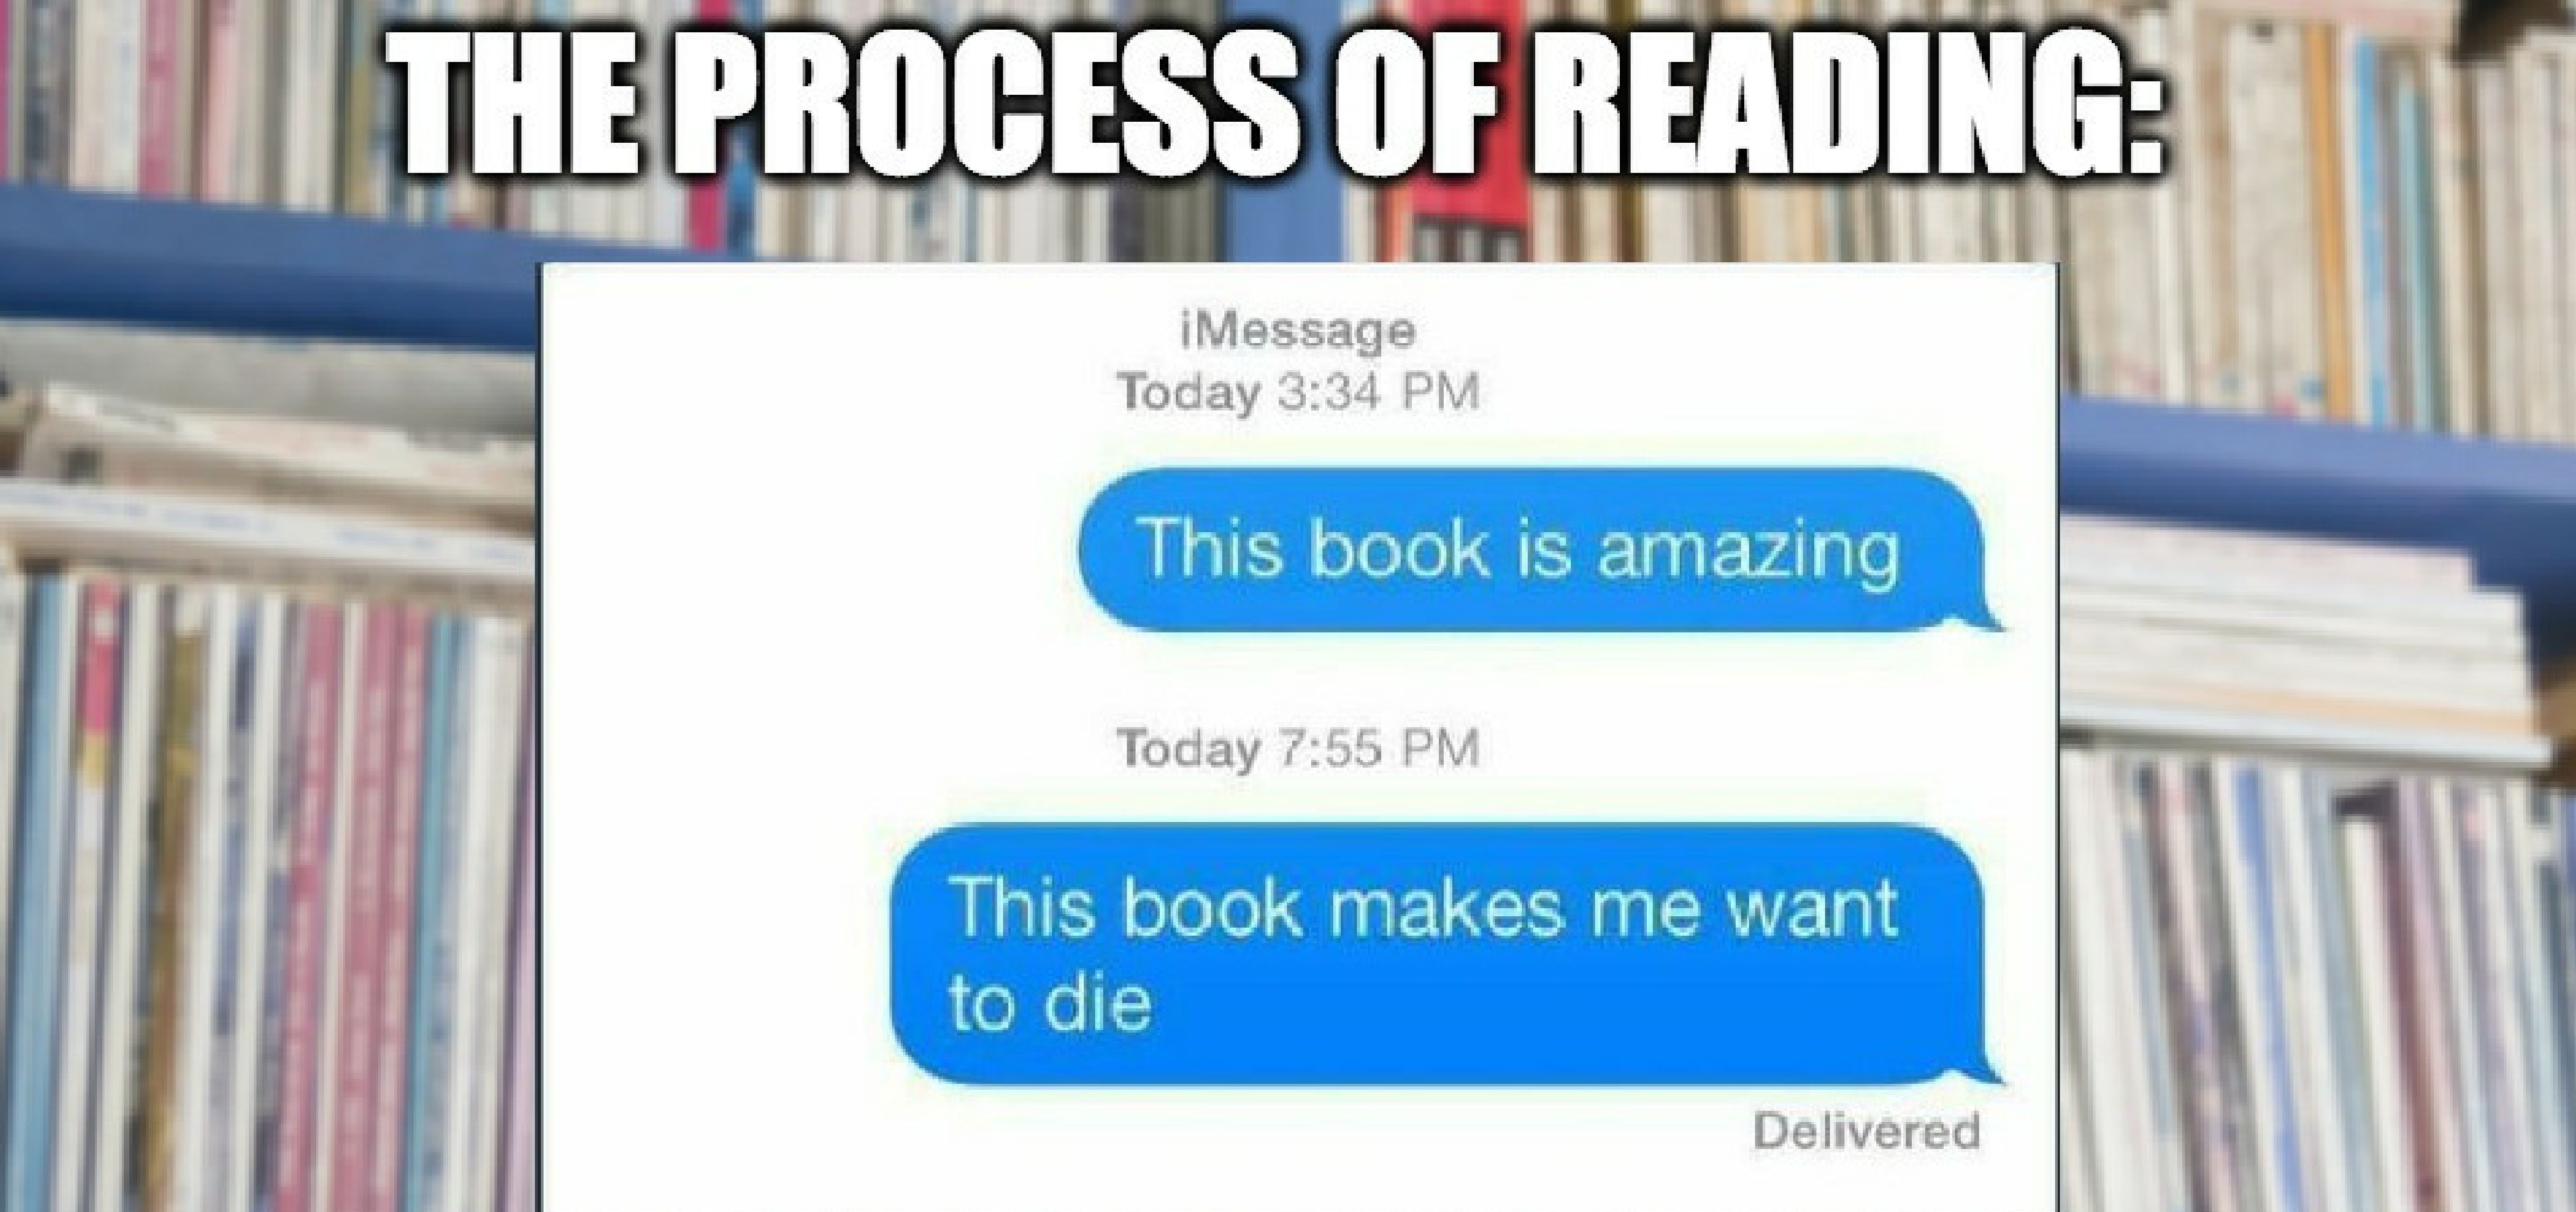 Reading Books Meme